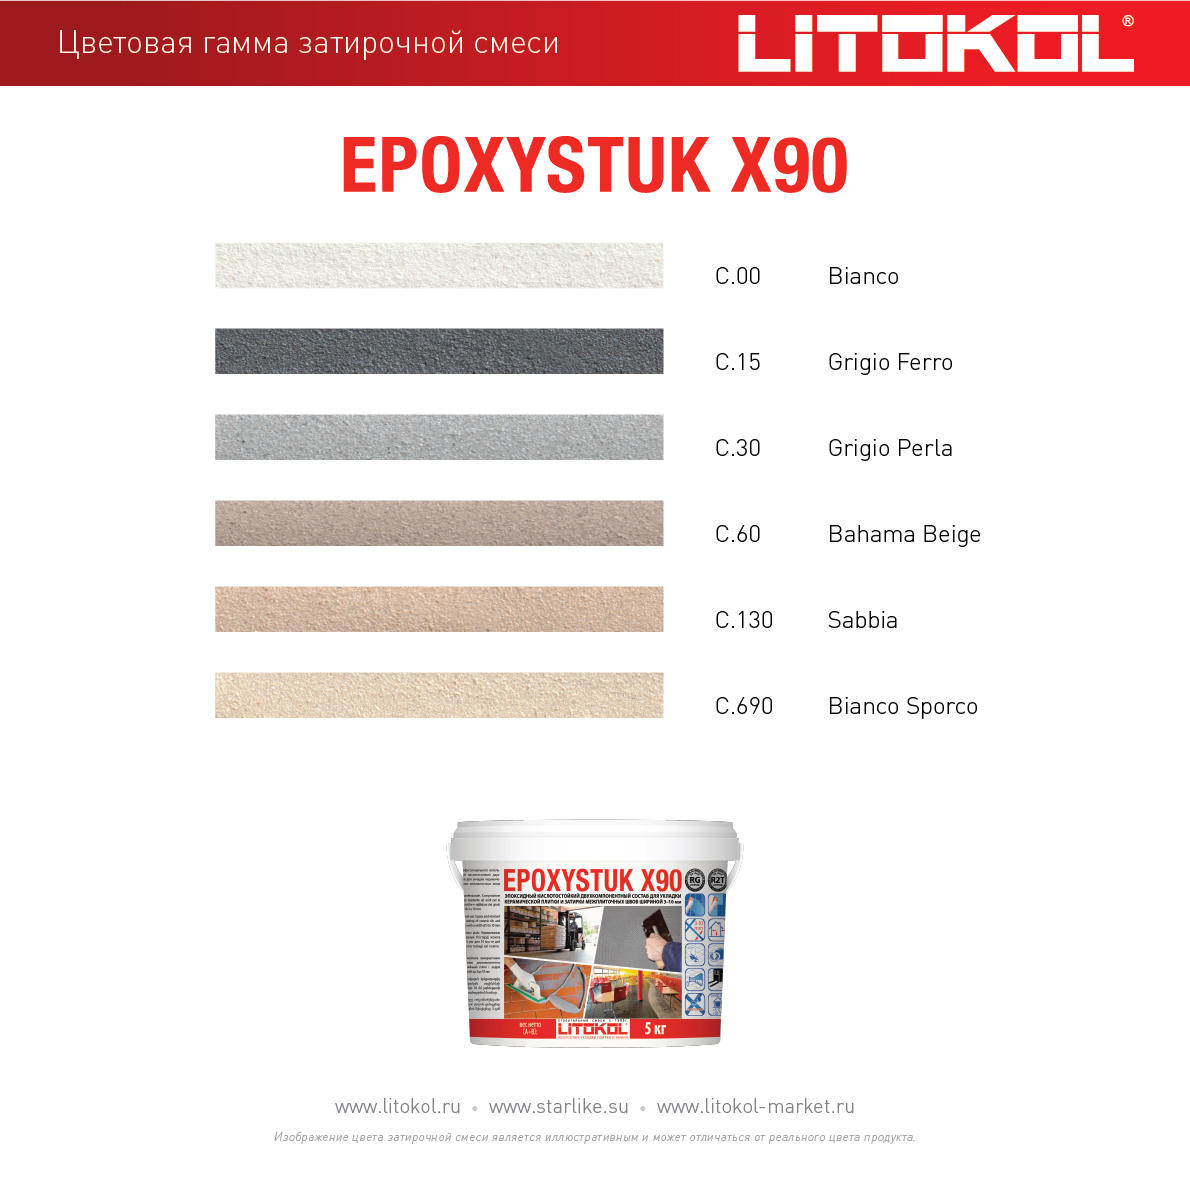 Герметик литокол. Litokol Epoxystuk x90. Цвета затирки Литокол Epoxystuk x90. Затирка Litokol Epoxystuk x90 5 кг c.30 жемчужно-серый. Литокол х90 затирка эпоксидная.